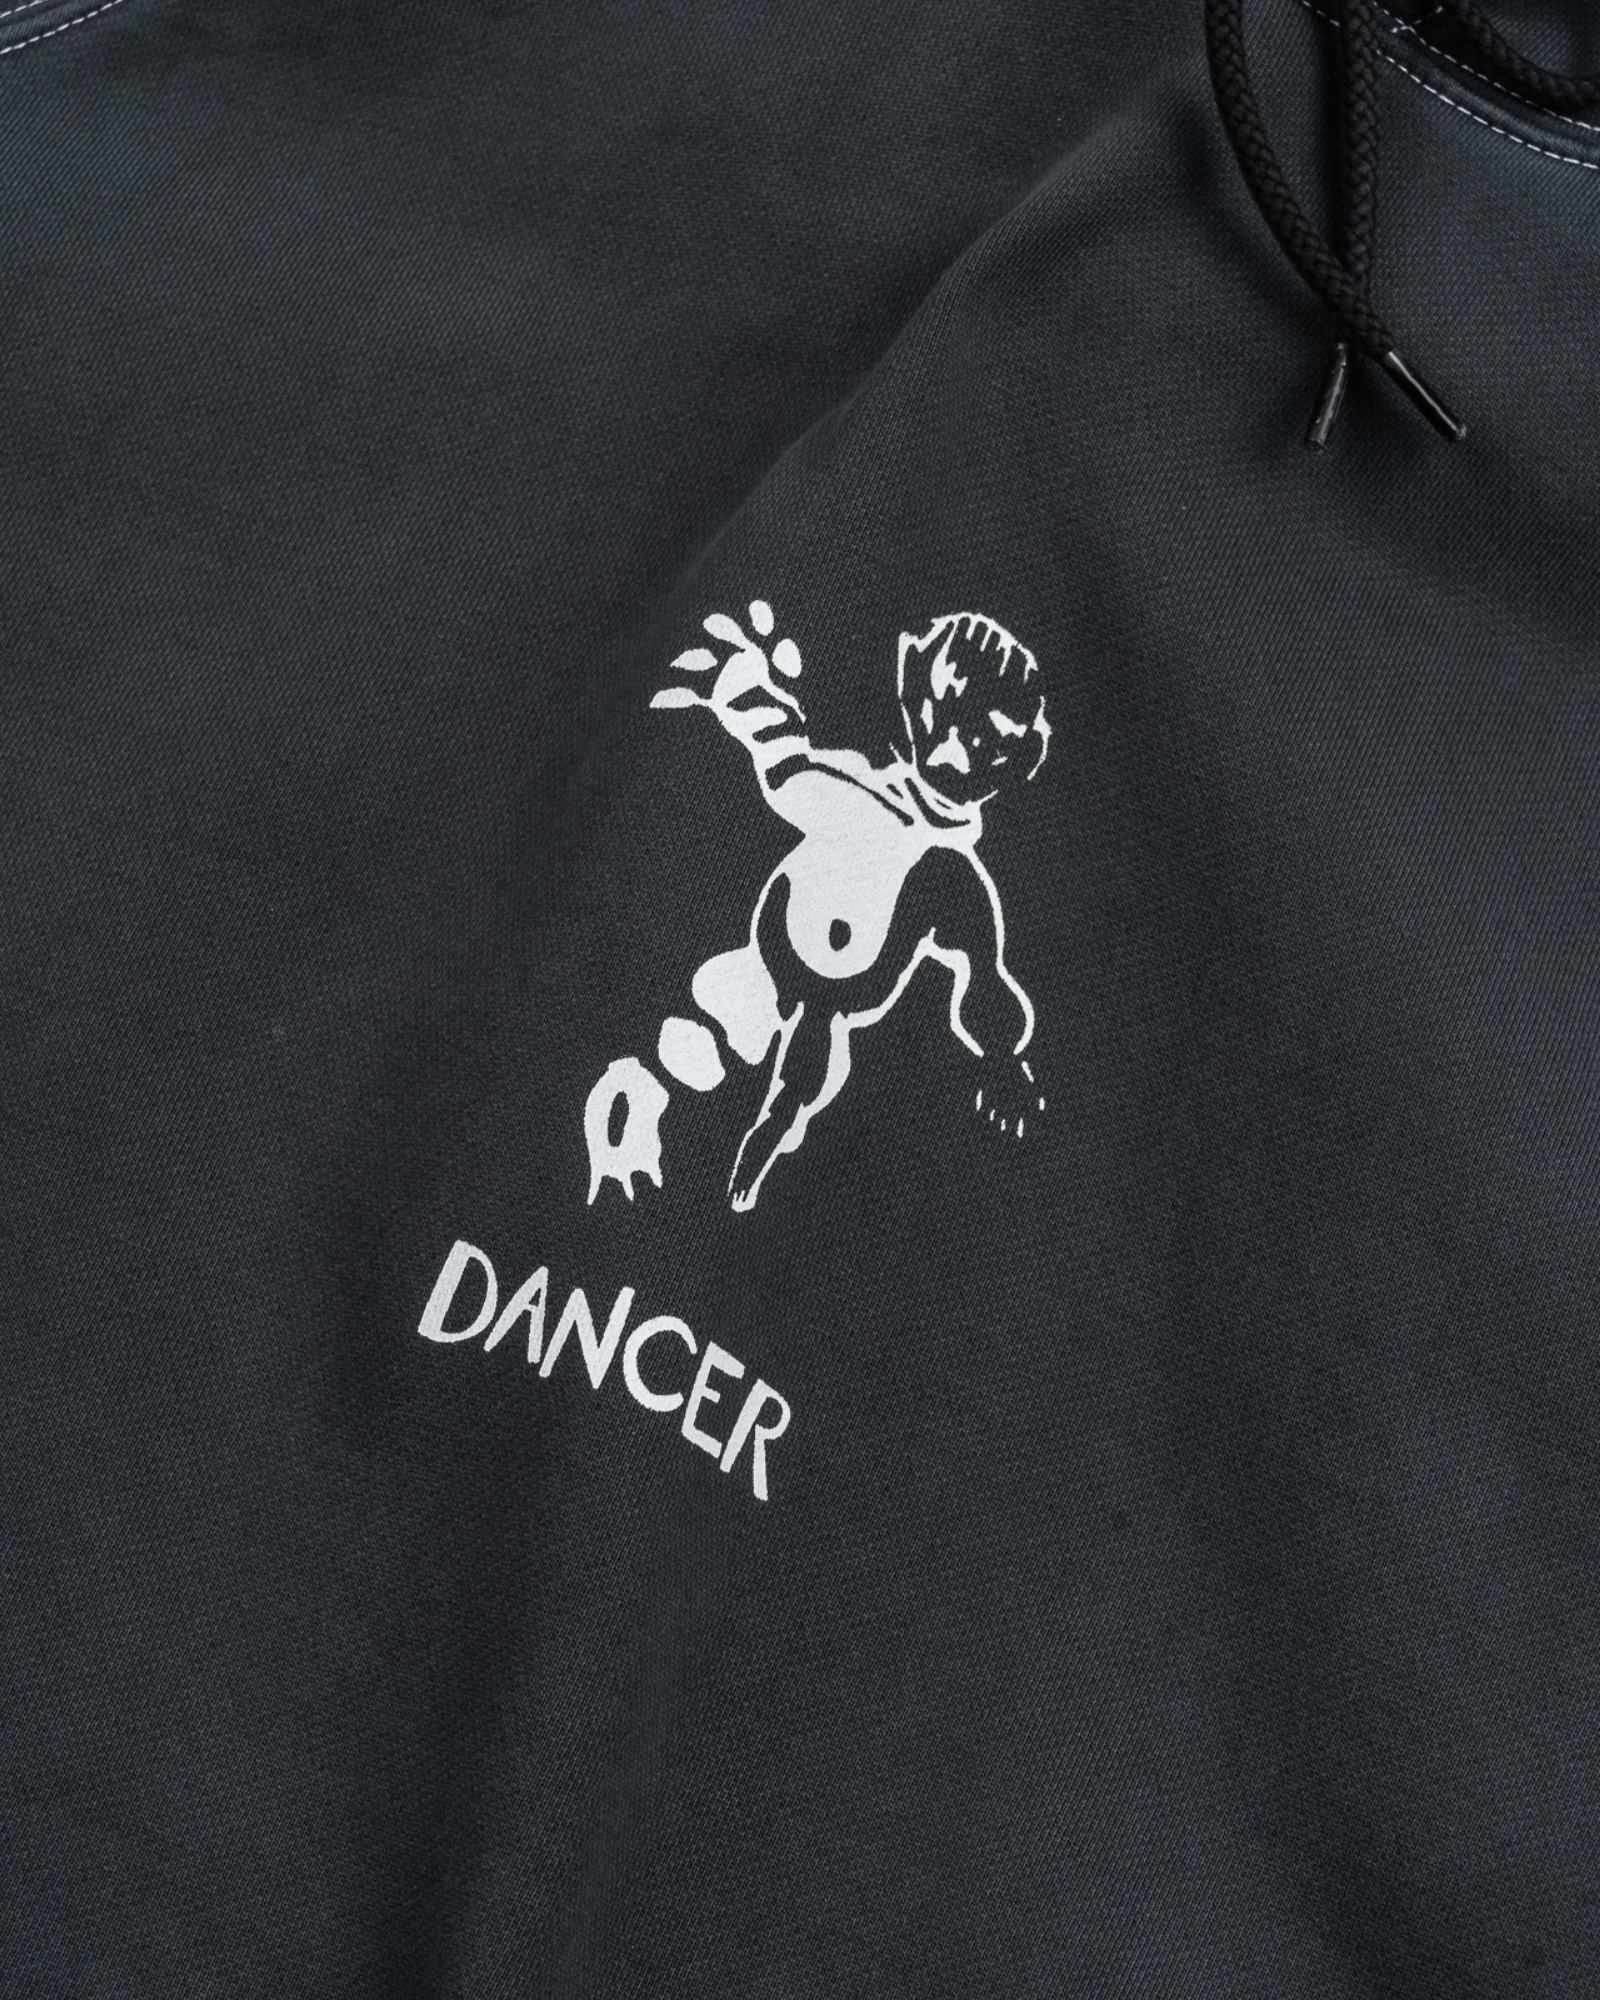 Dancer - Sweat - OG Logo Contrast Stitch - Hoodie - Black